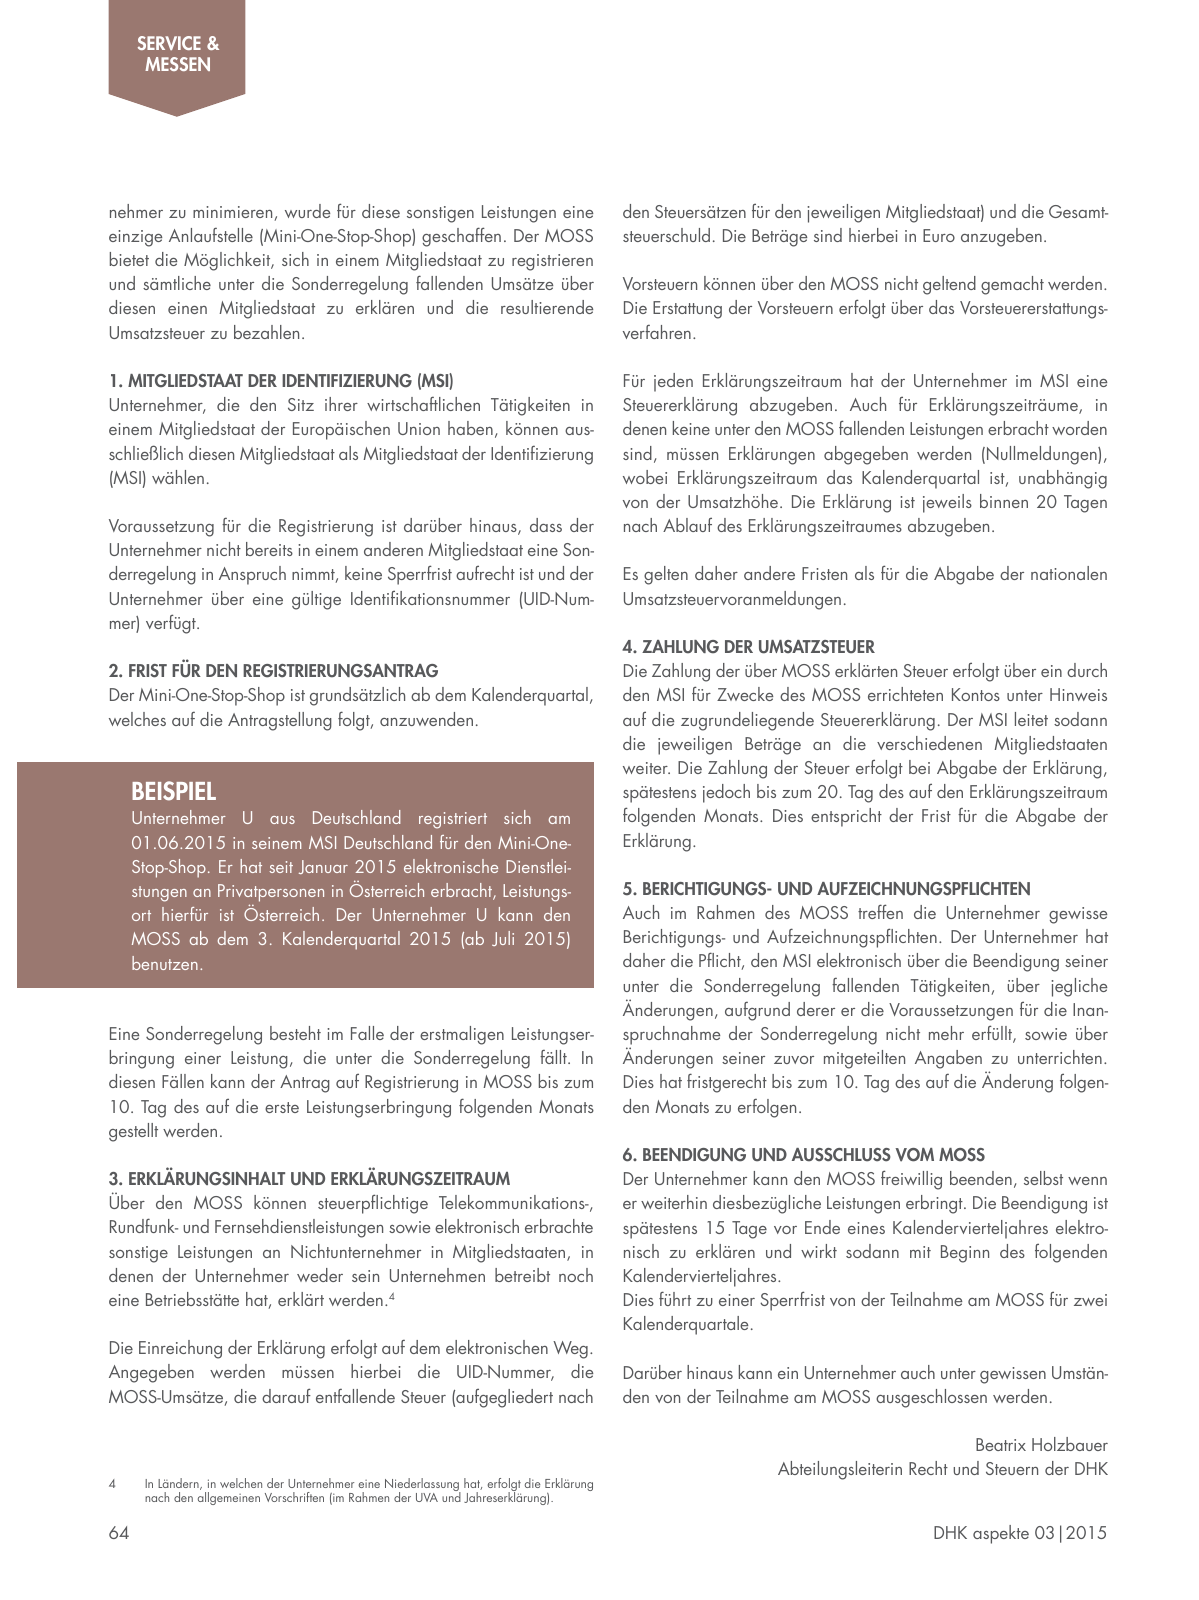 Vorschau Aspekte 03/2015 Seite 64